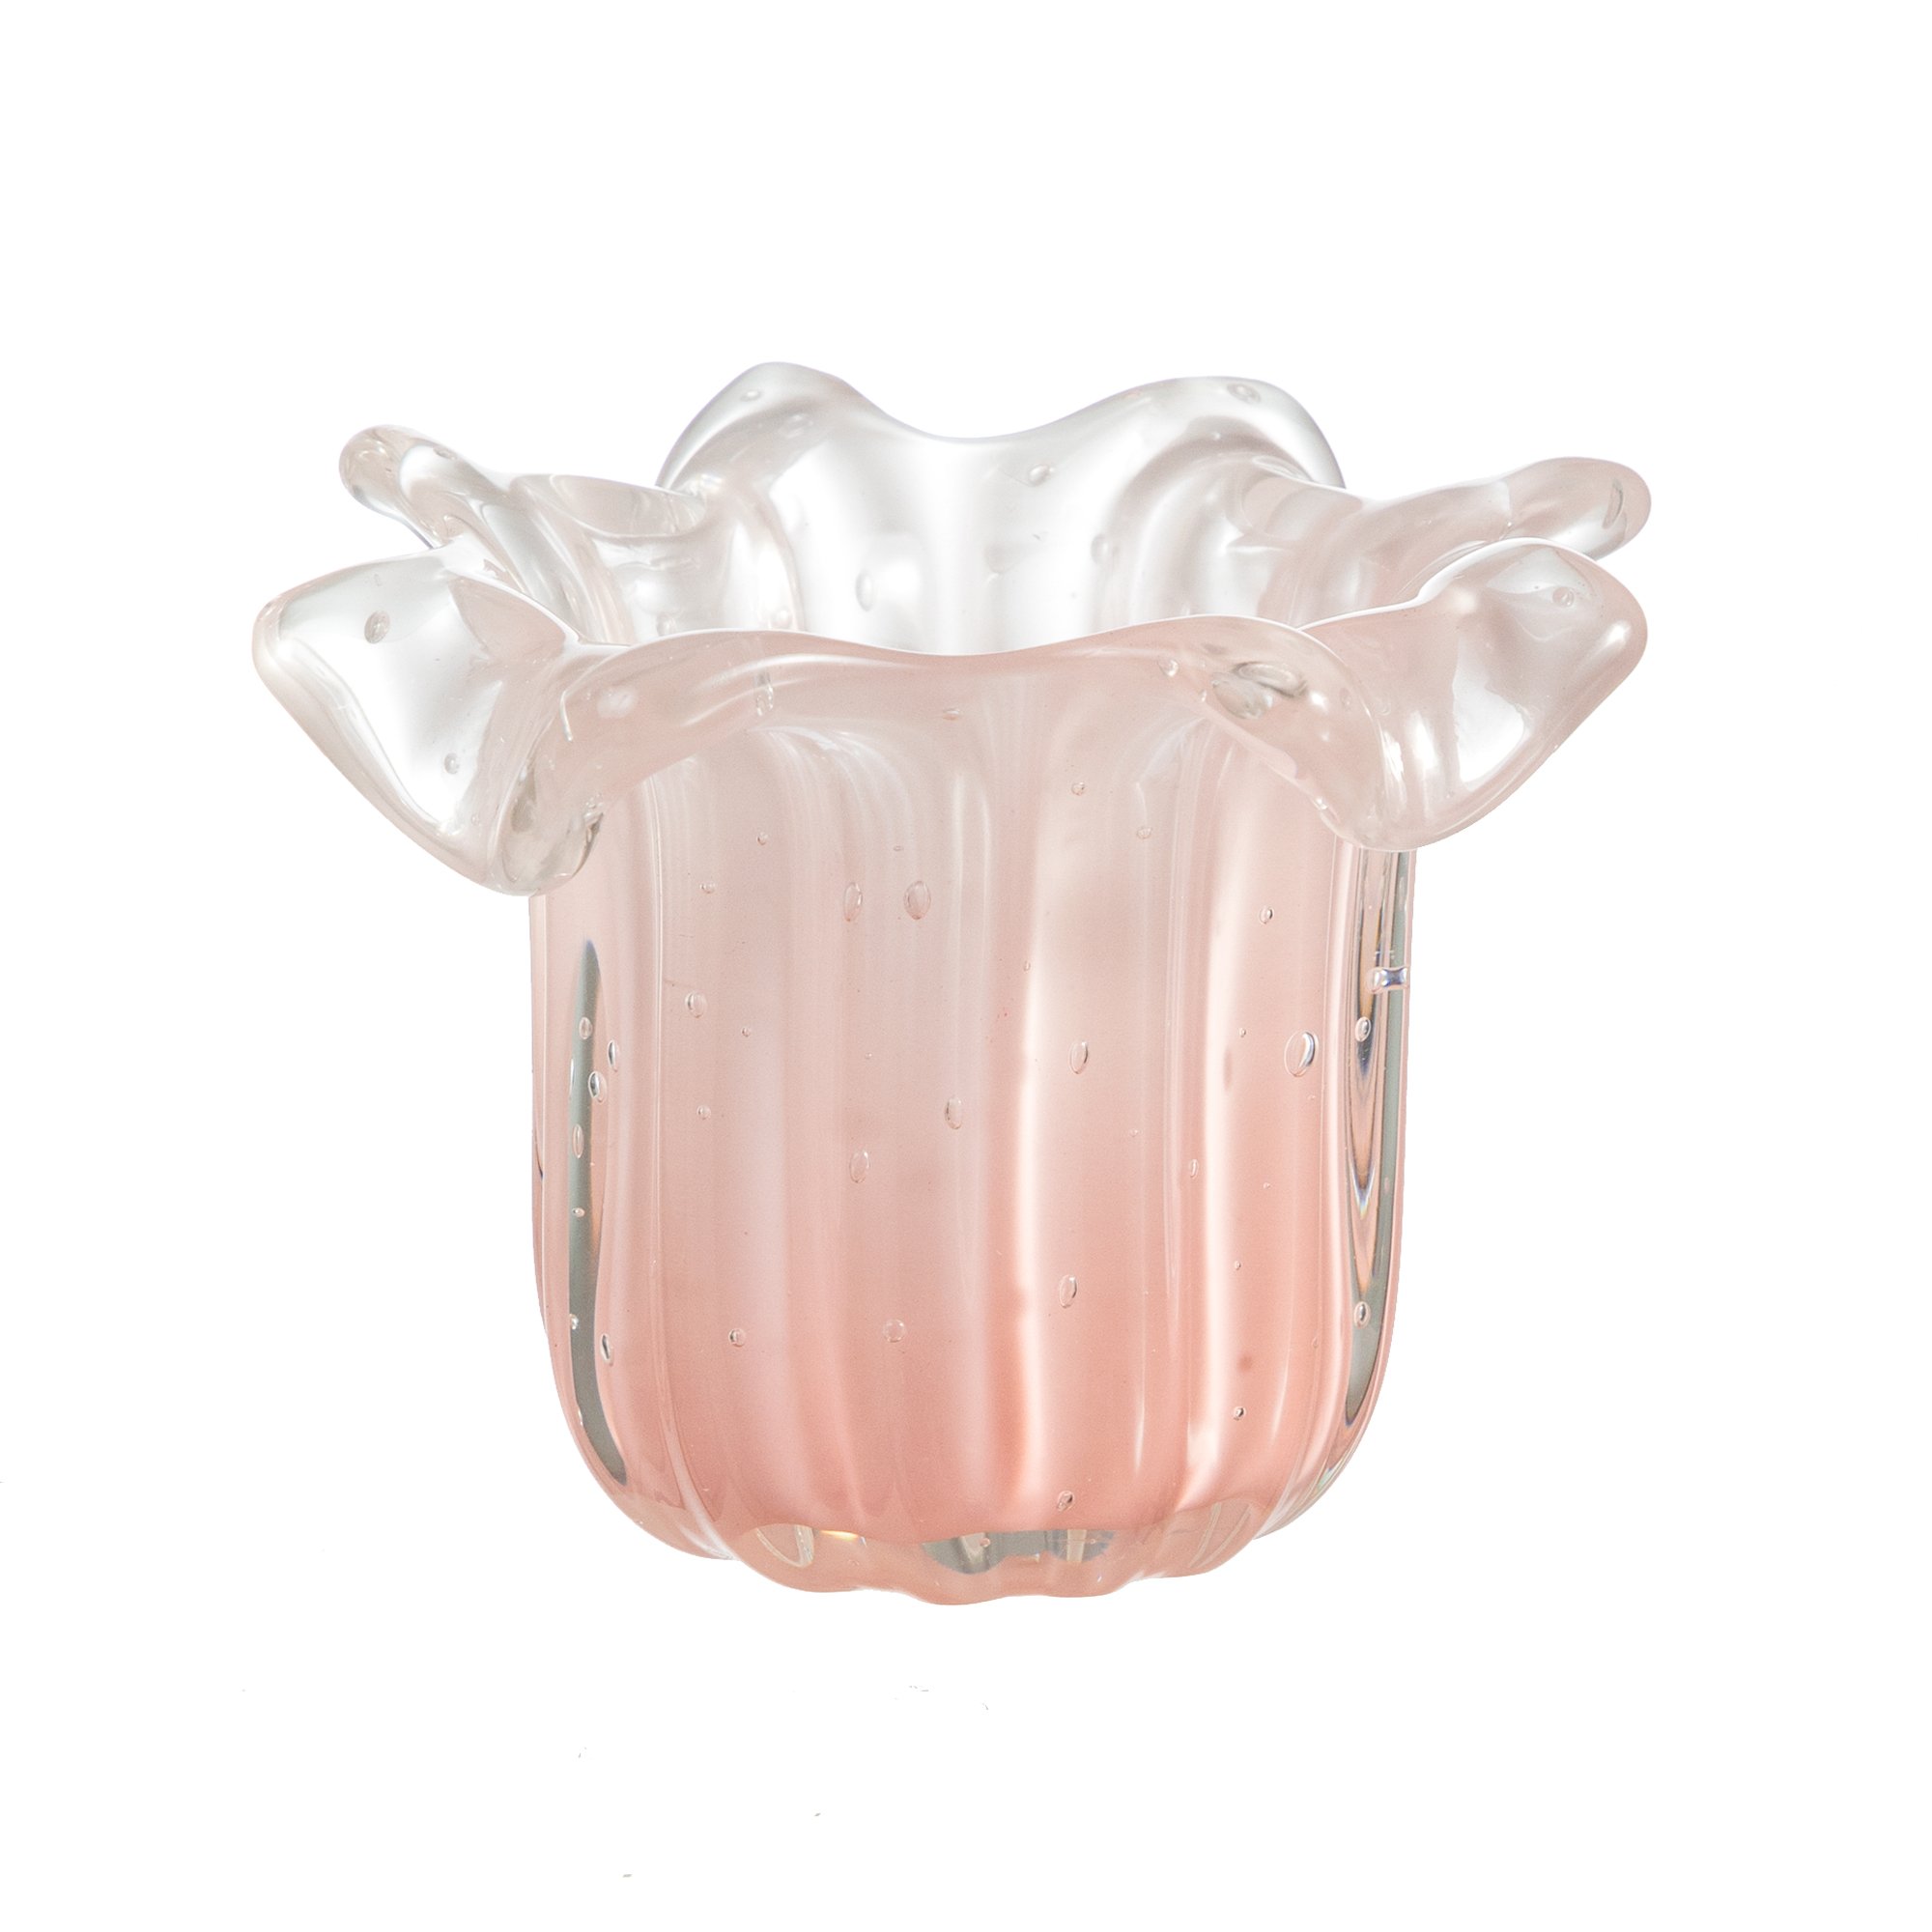 01 vaso murano salvador jade rosa